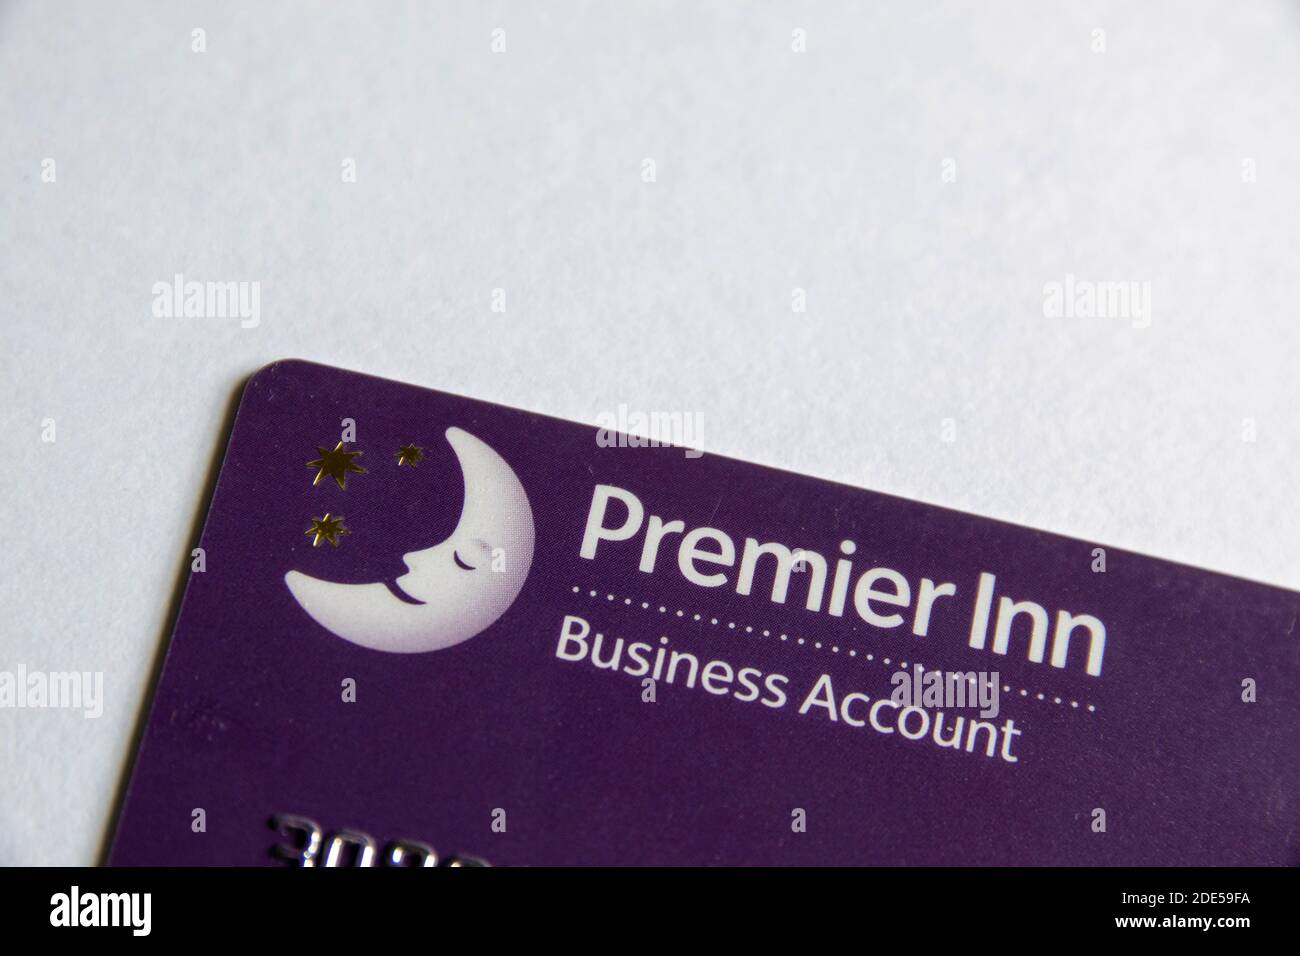 Durham, Regno Unito - 28 maggio 2020: Carta conto Premier Inn Business. La carta consente alle persone che viaggiano per lavoro di addebitare una camera e i pasti alla propria azienda. Foto Stock